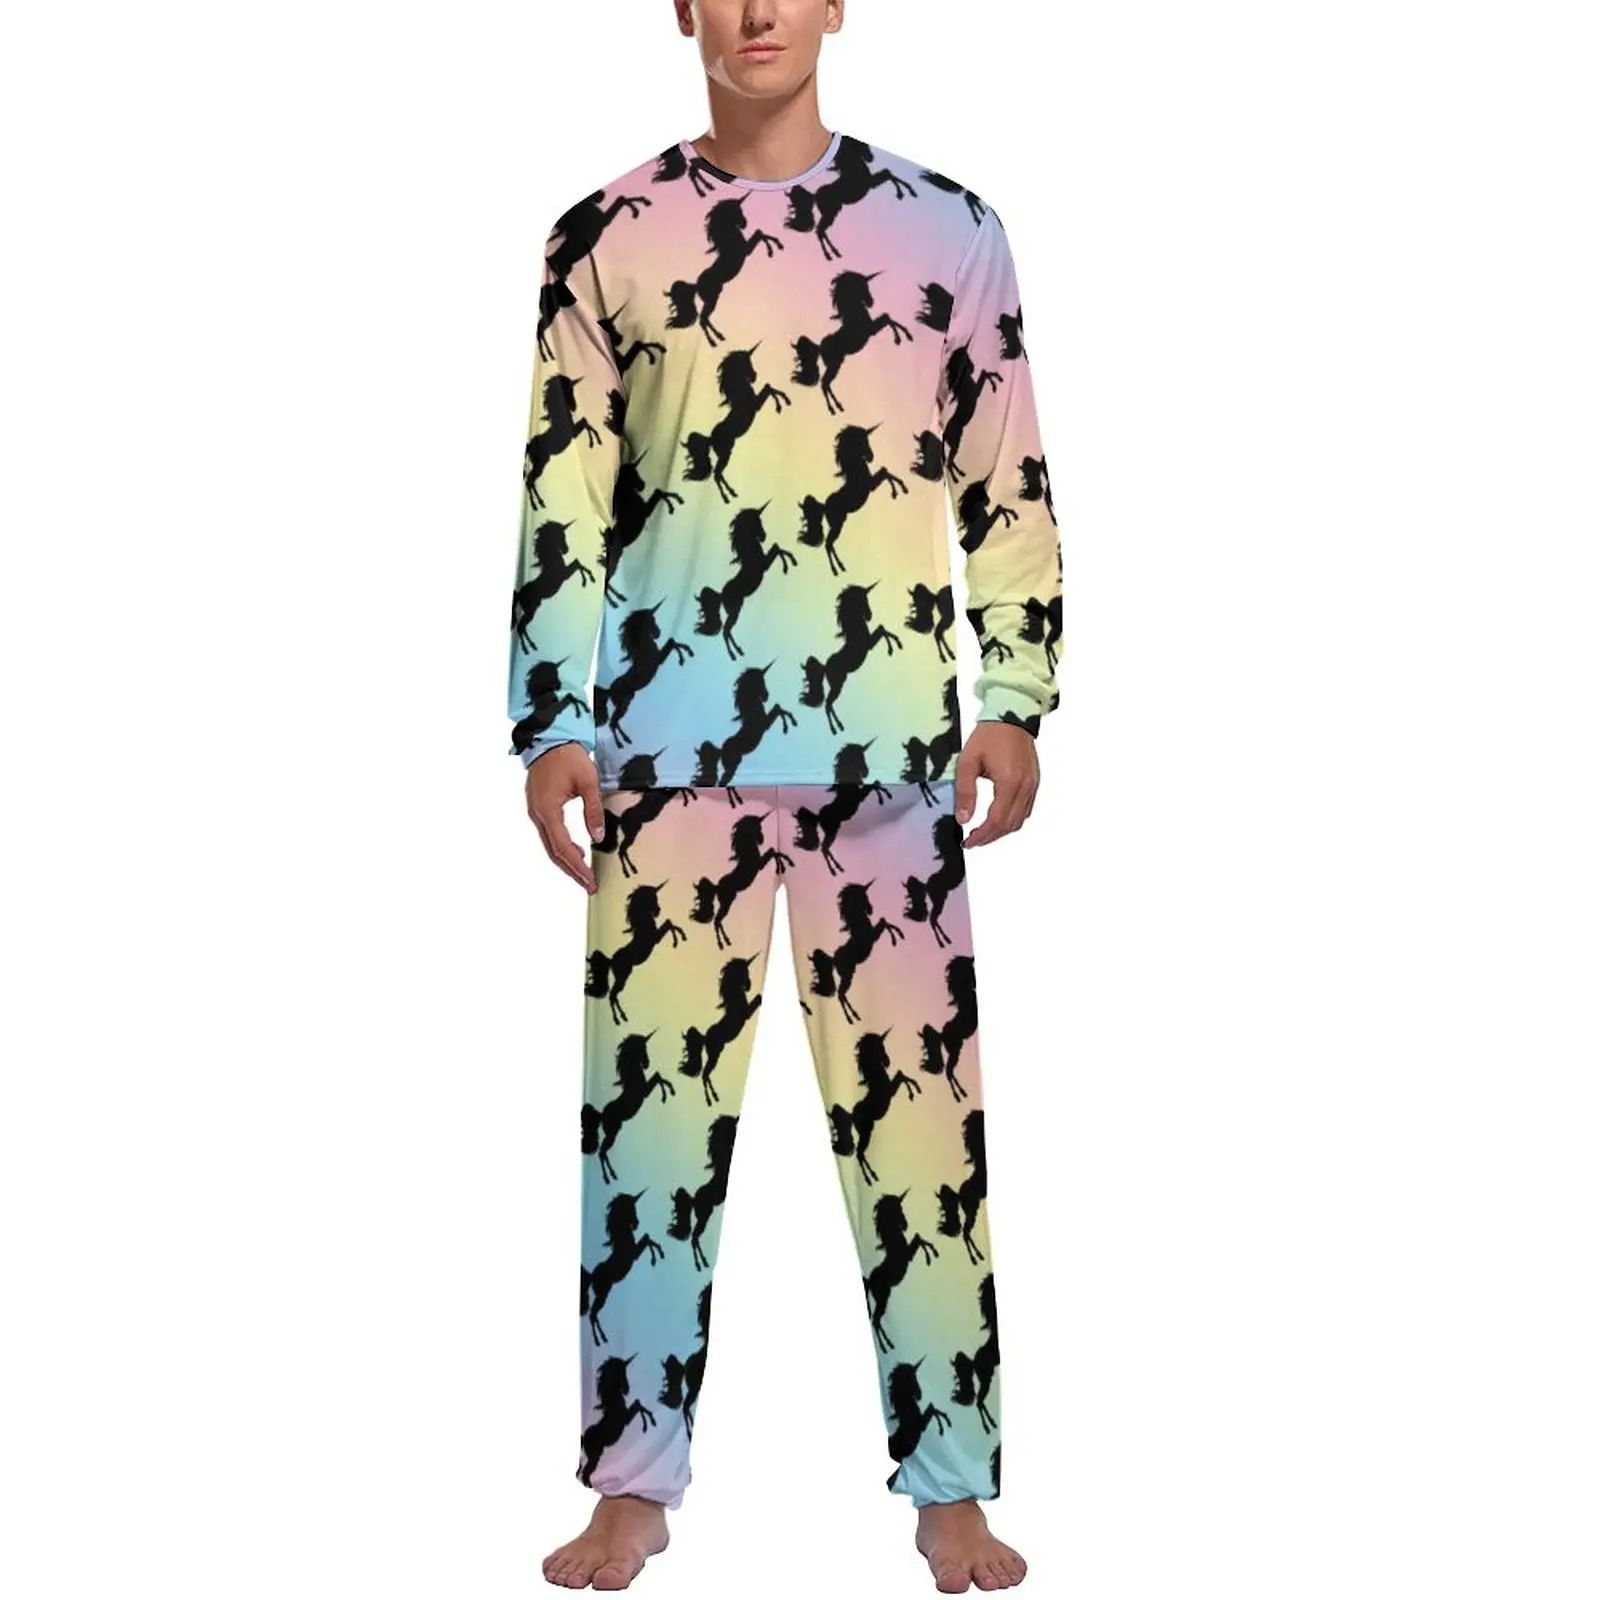 

Black Unicorn Silhouette Pajamas Long Sleeve Pastel Rainbow Print 2 Pieces Home Pajama Sets Spring Men Pattern Cute Nightwear